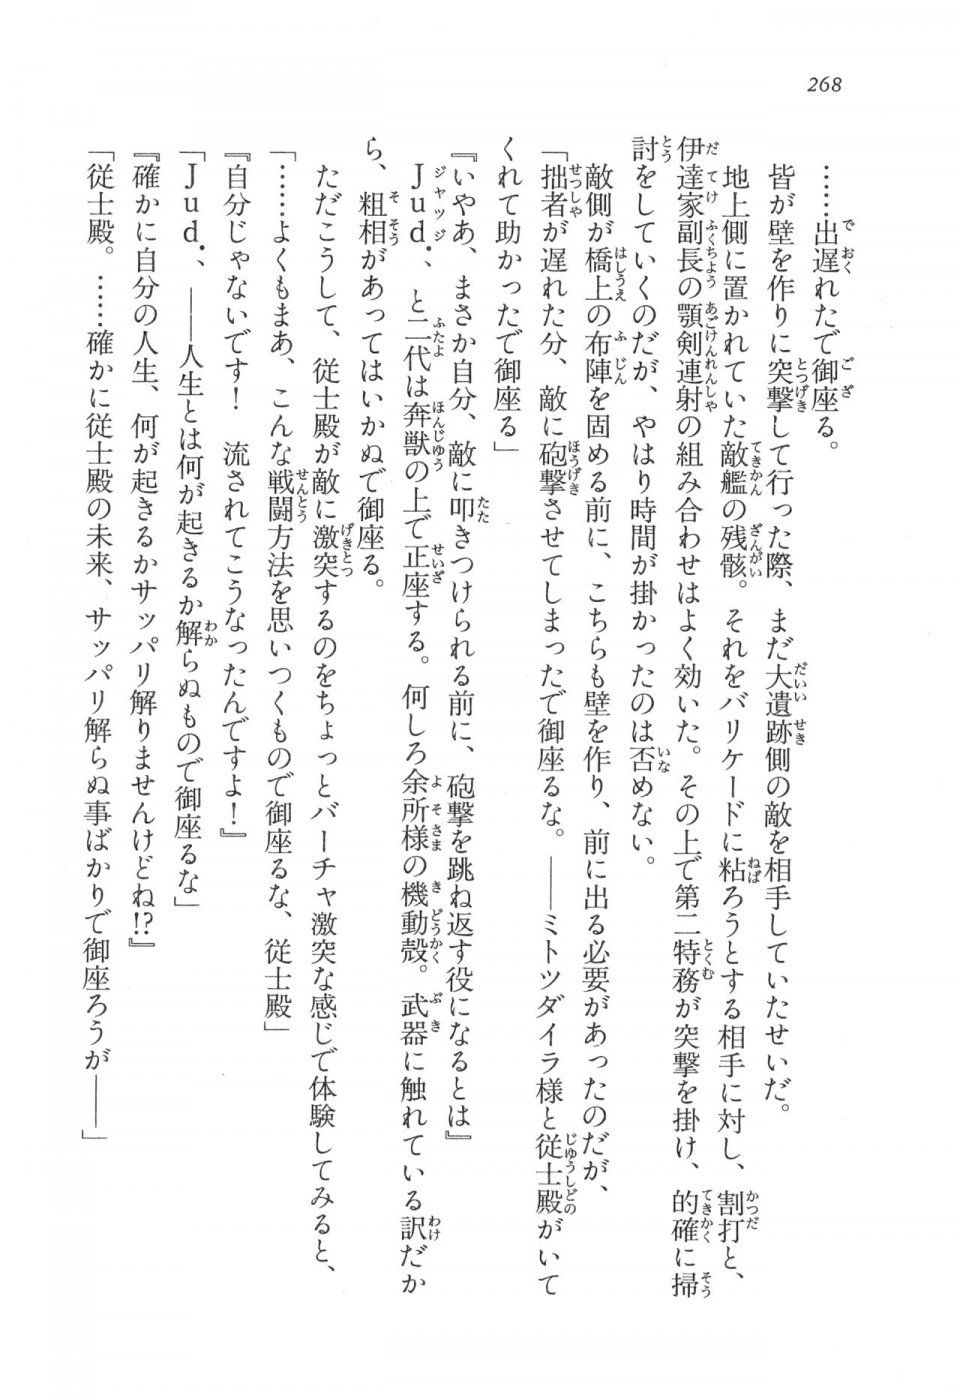 Kyoukai Senjou no Horizon LN Vol 17(7B) - Photo #268